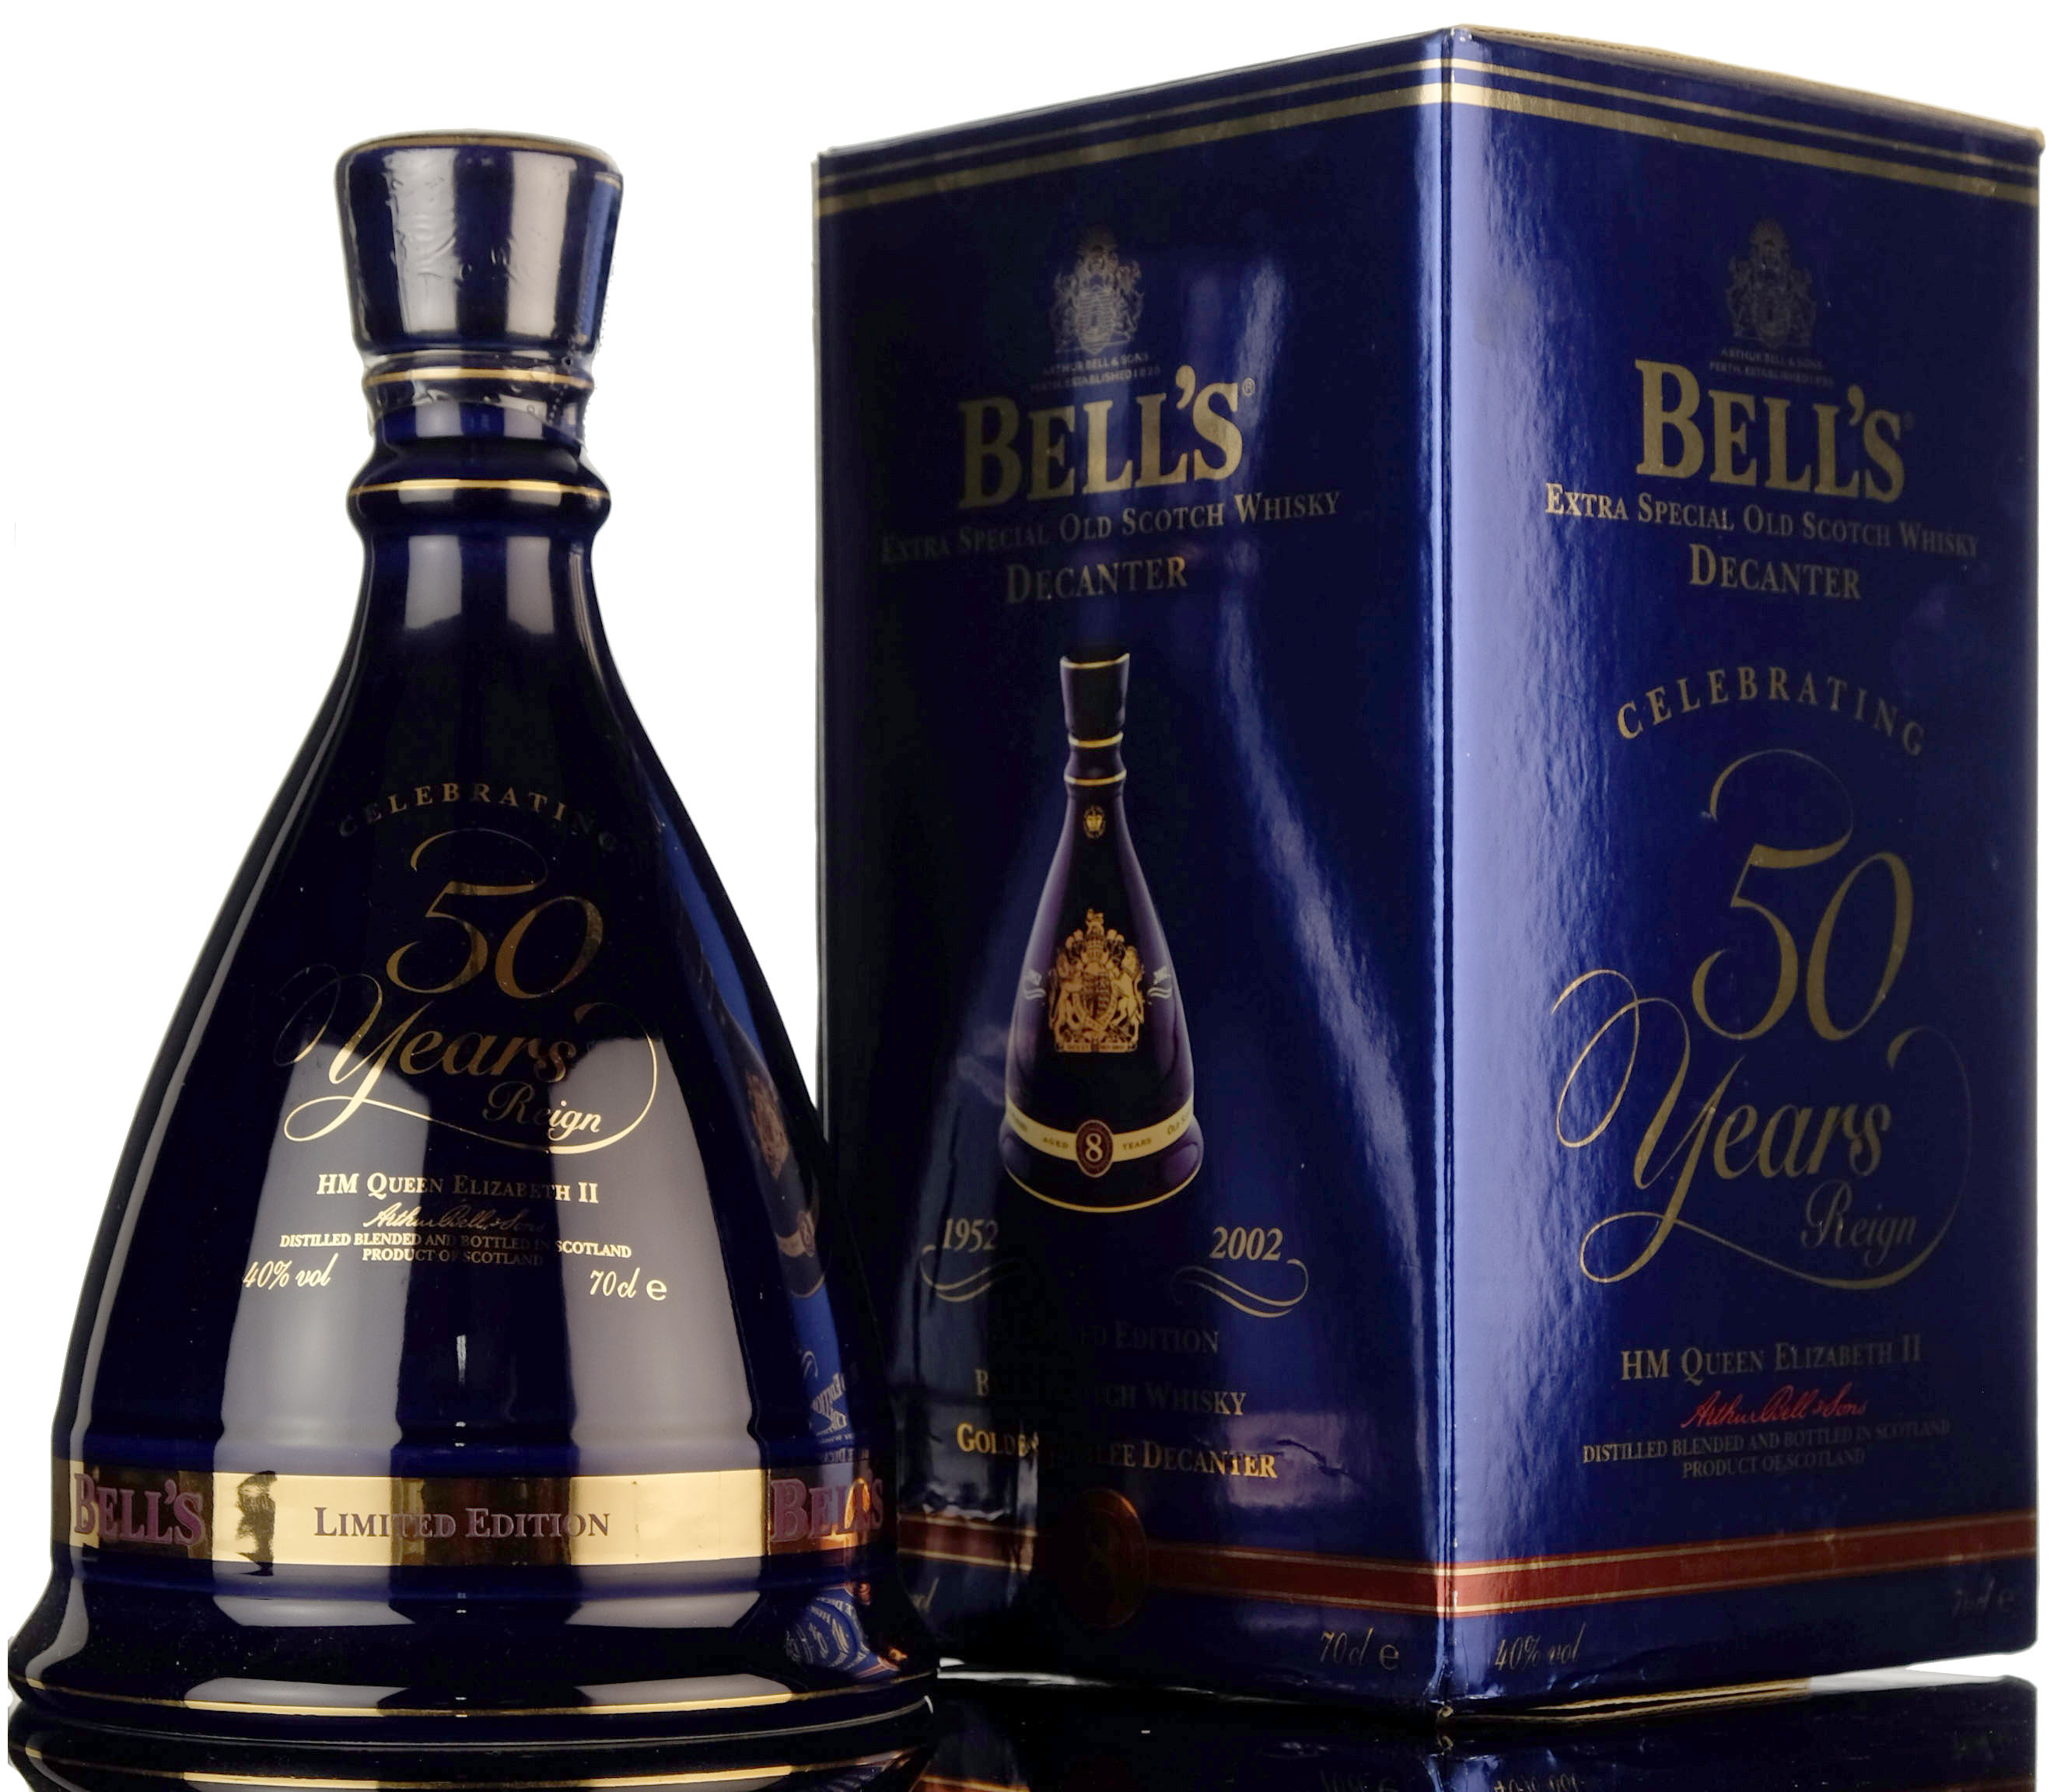 Bells 50 Years Reign HM Queen Elizabeth II